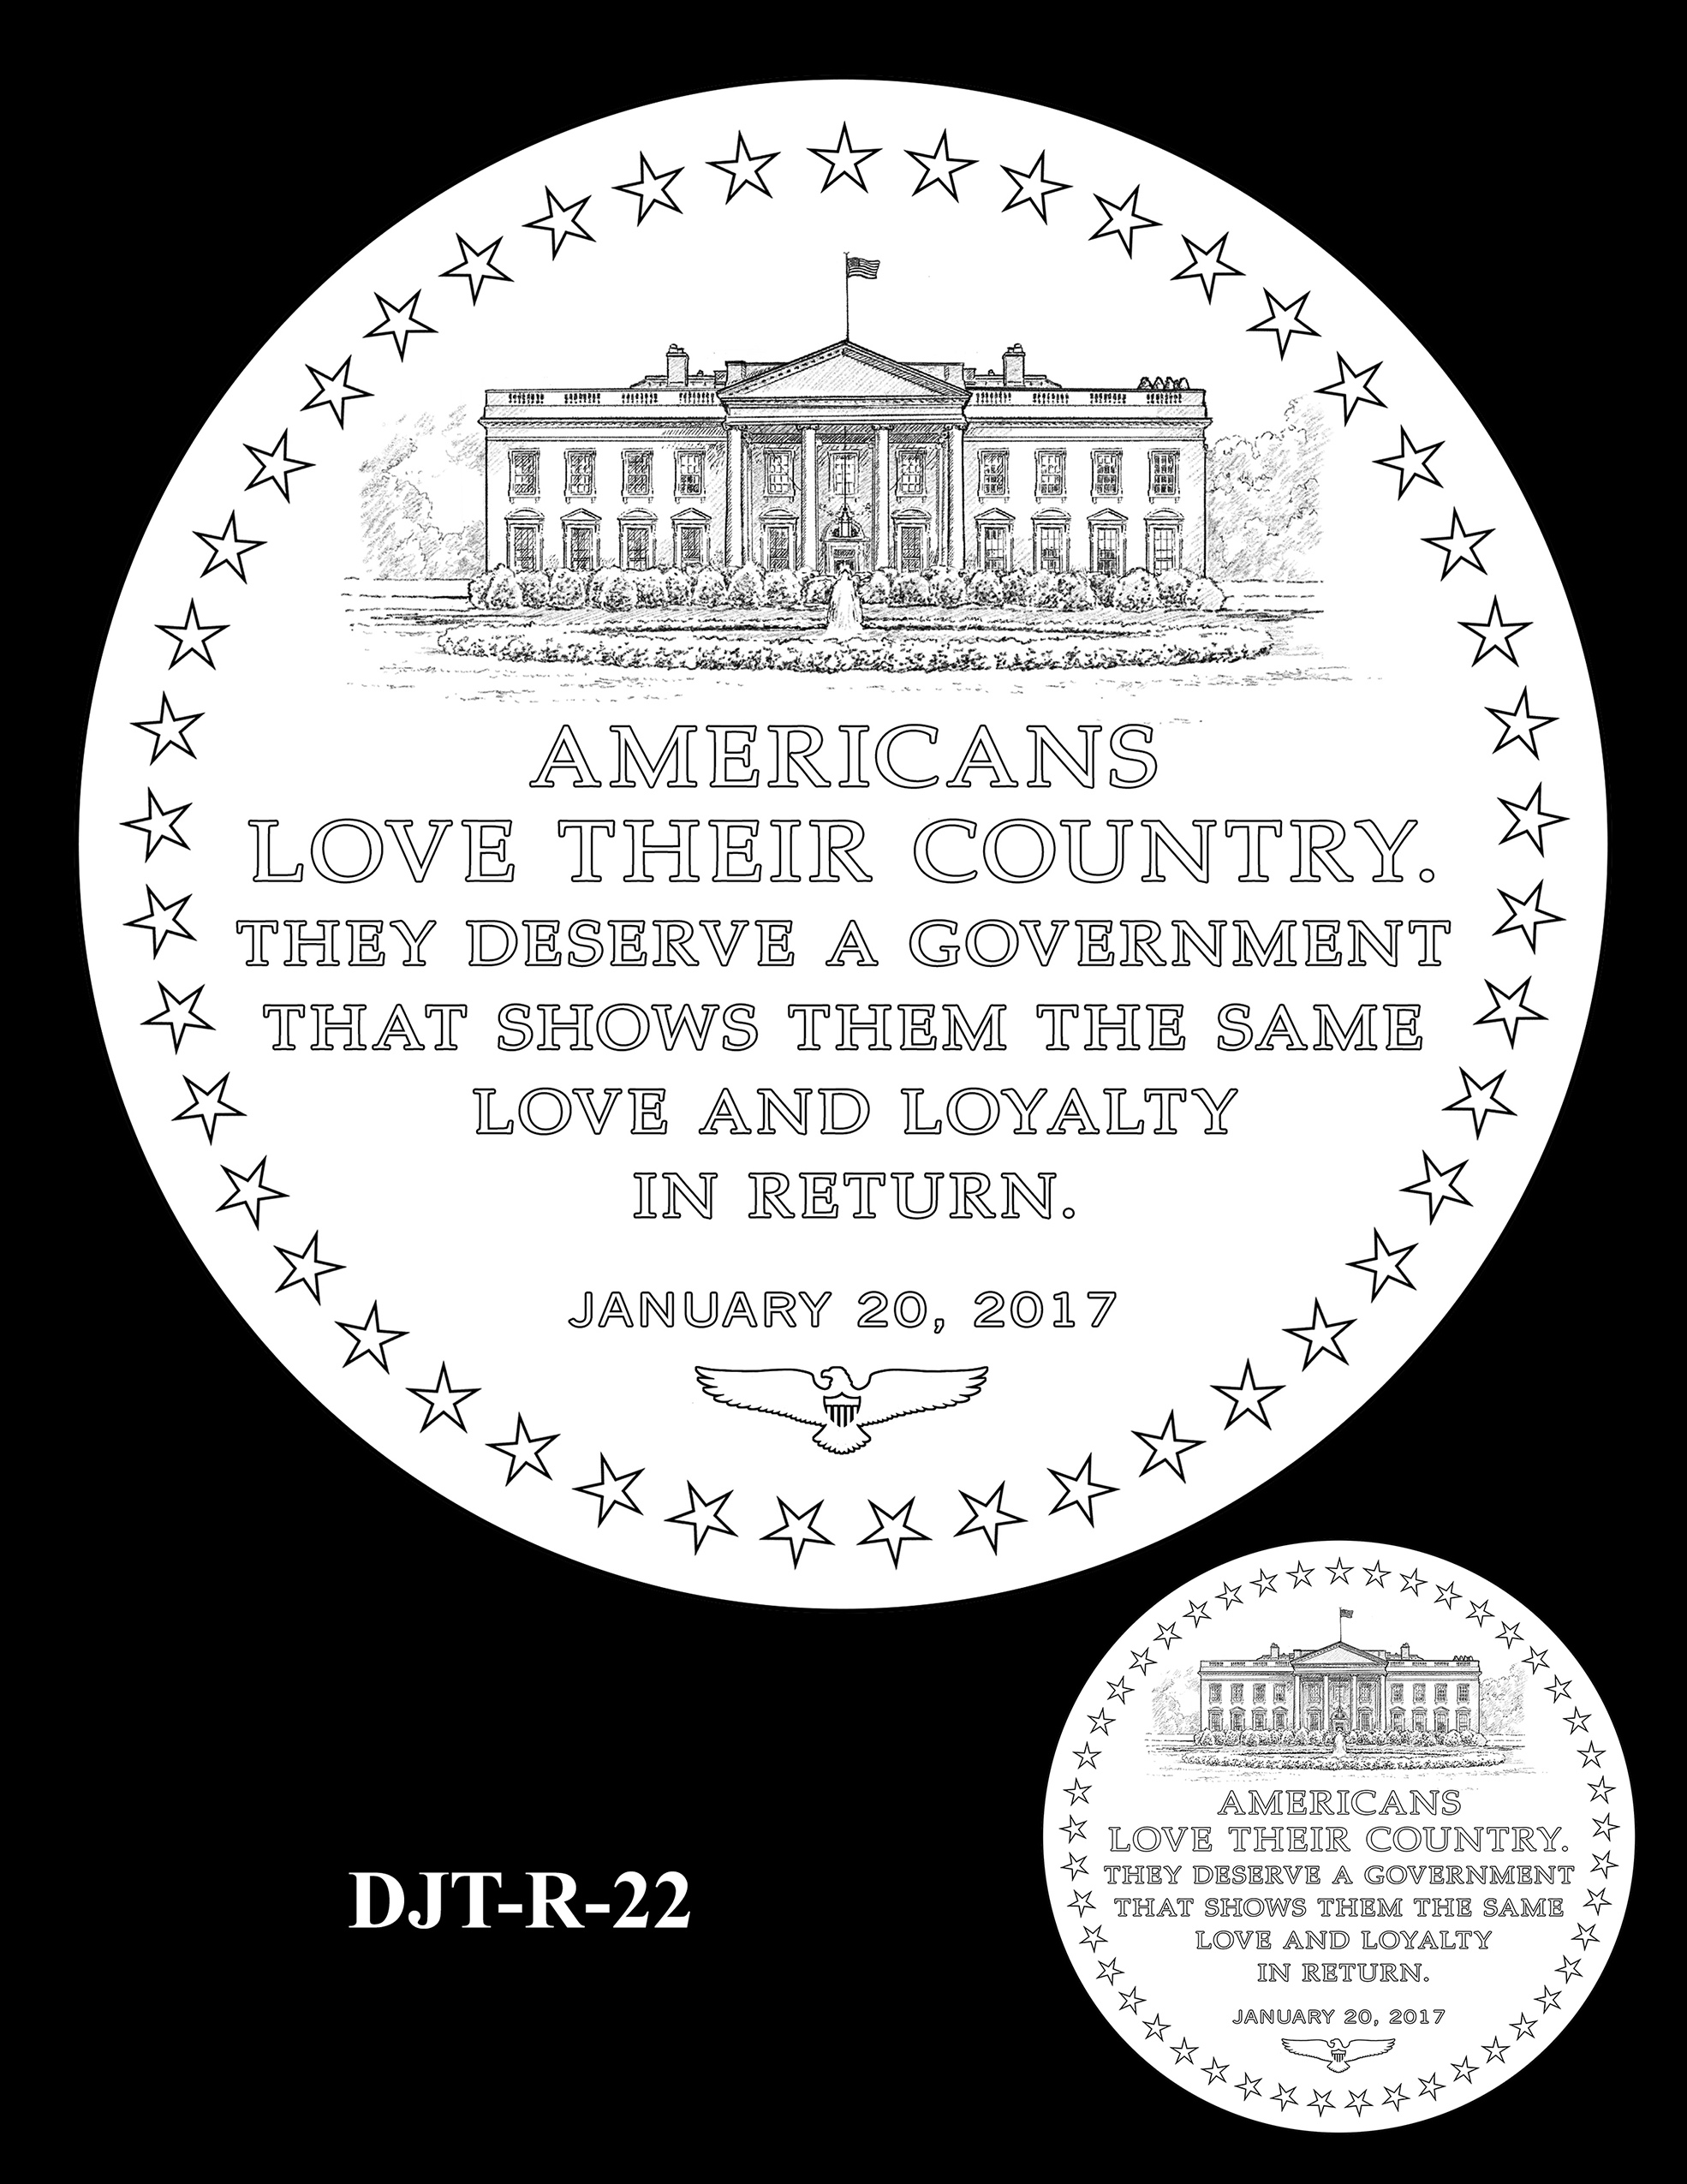 DJT-R-22 -- Donald J. Trump Presidential Medal